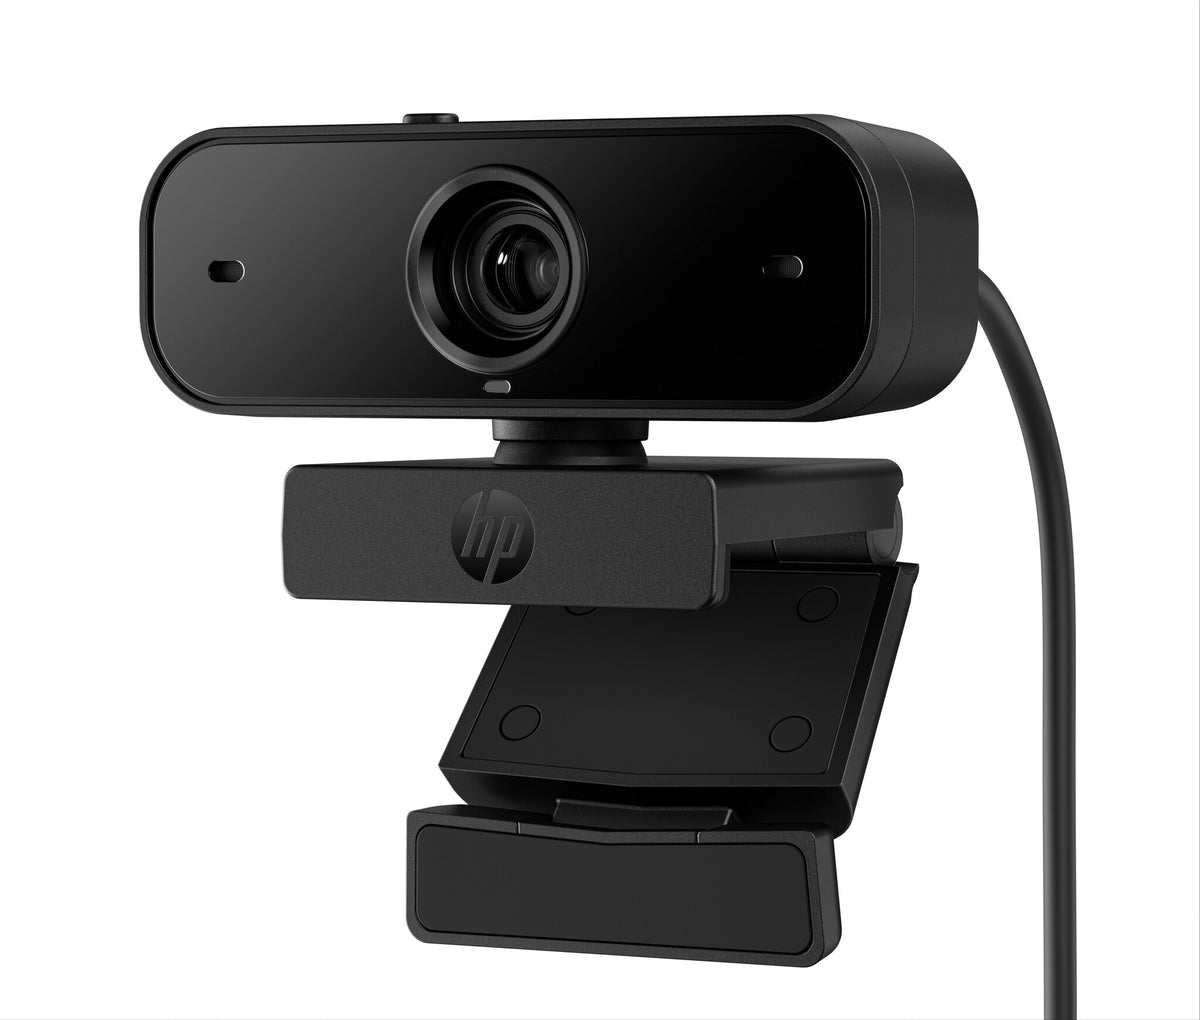 HP 435 - 2 MP 1920 x 1080 pixels webcam